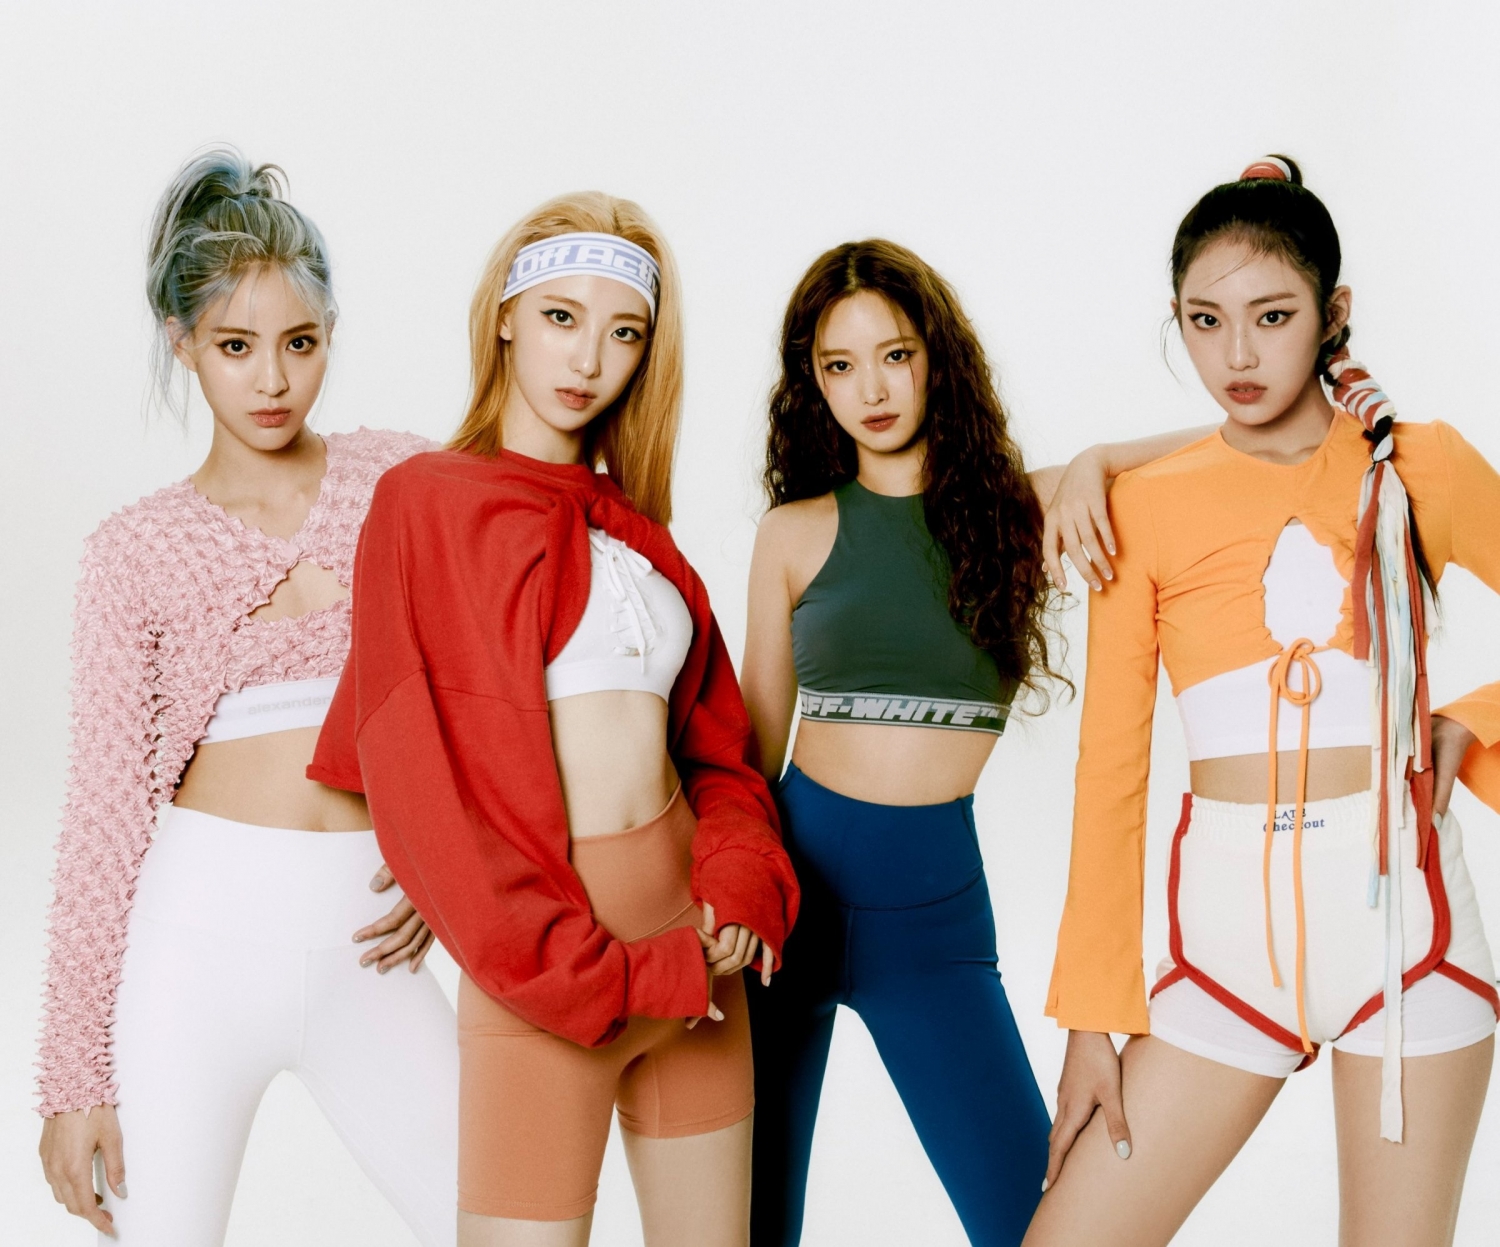 Bảng xếp hạng danh tiếng thương hiệu nhóm nhạc nữ K-pop tháng 3/2023